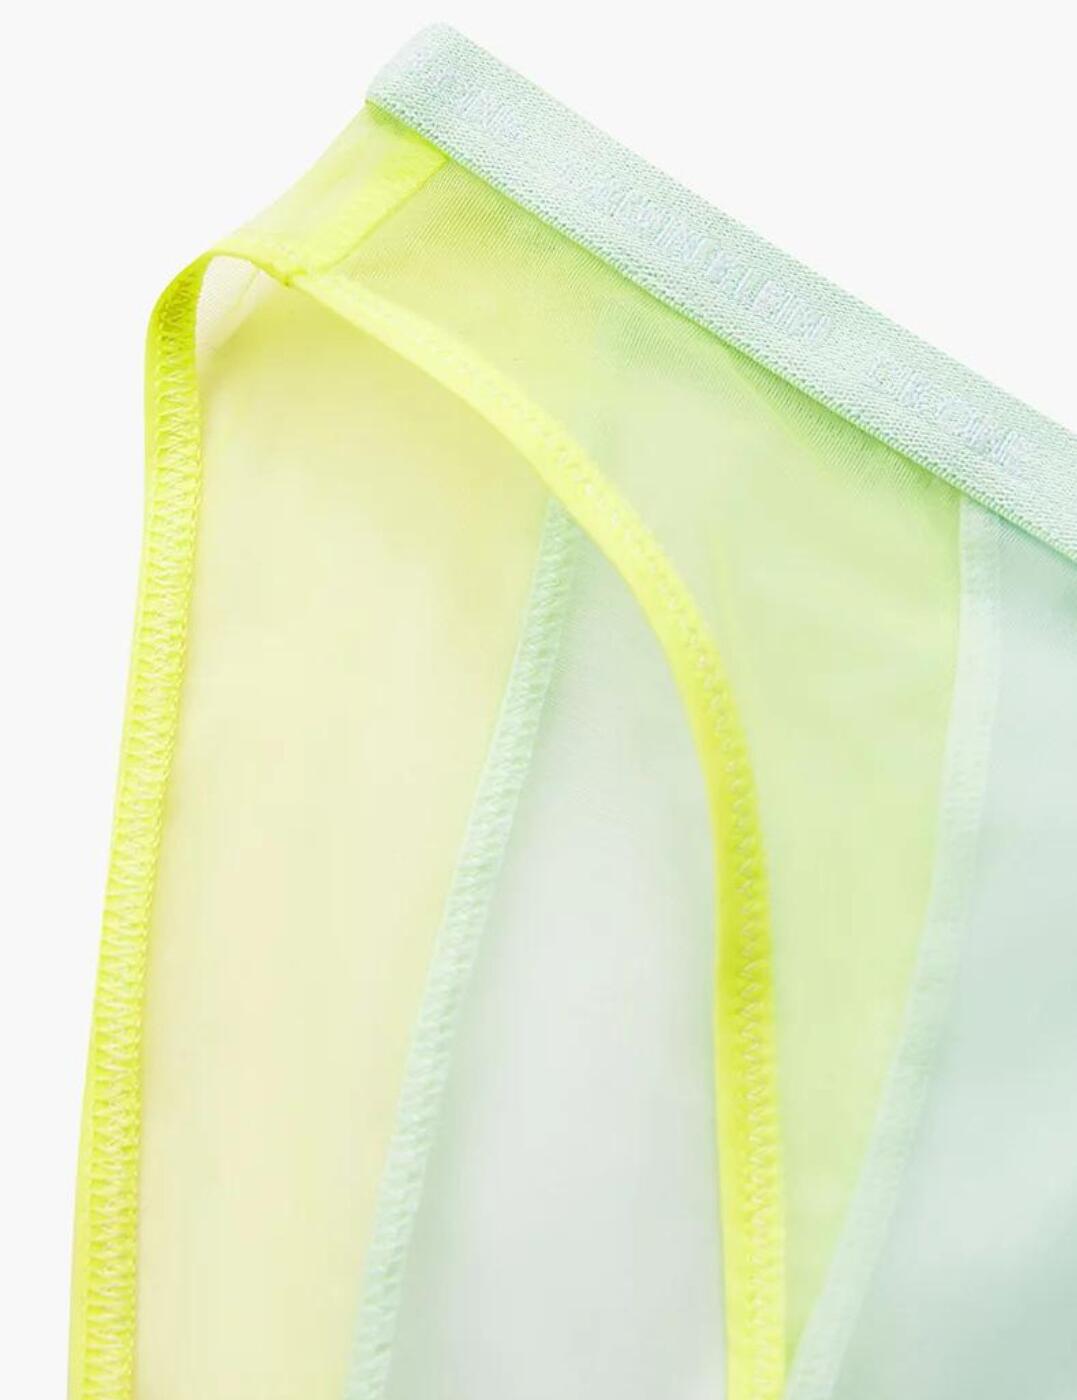 Calvin Klein Underwear Ck One Pride Layered Stretch-mesh Briefs - Yellow -  ShopStyle Knickers